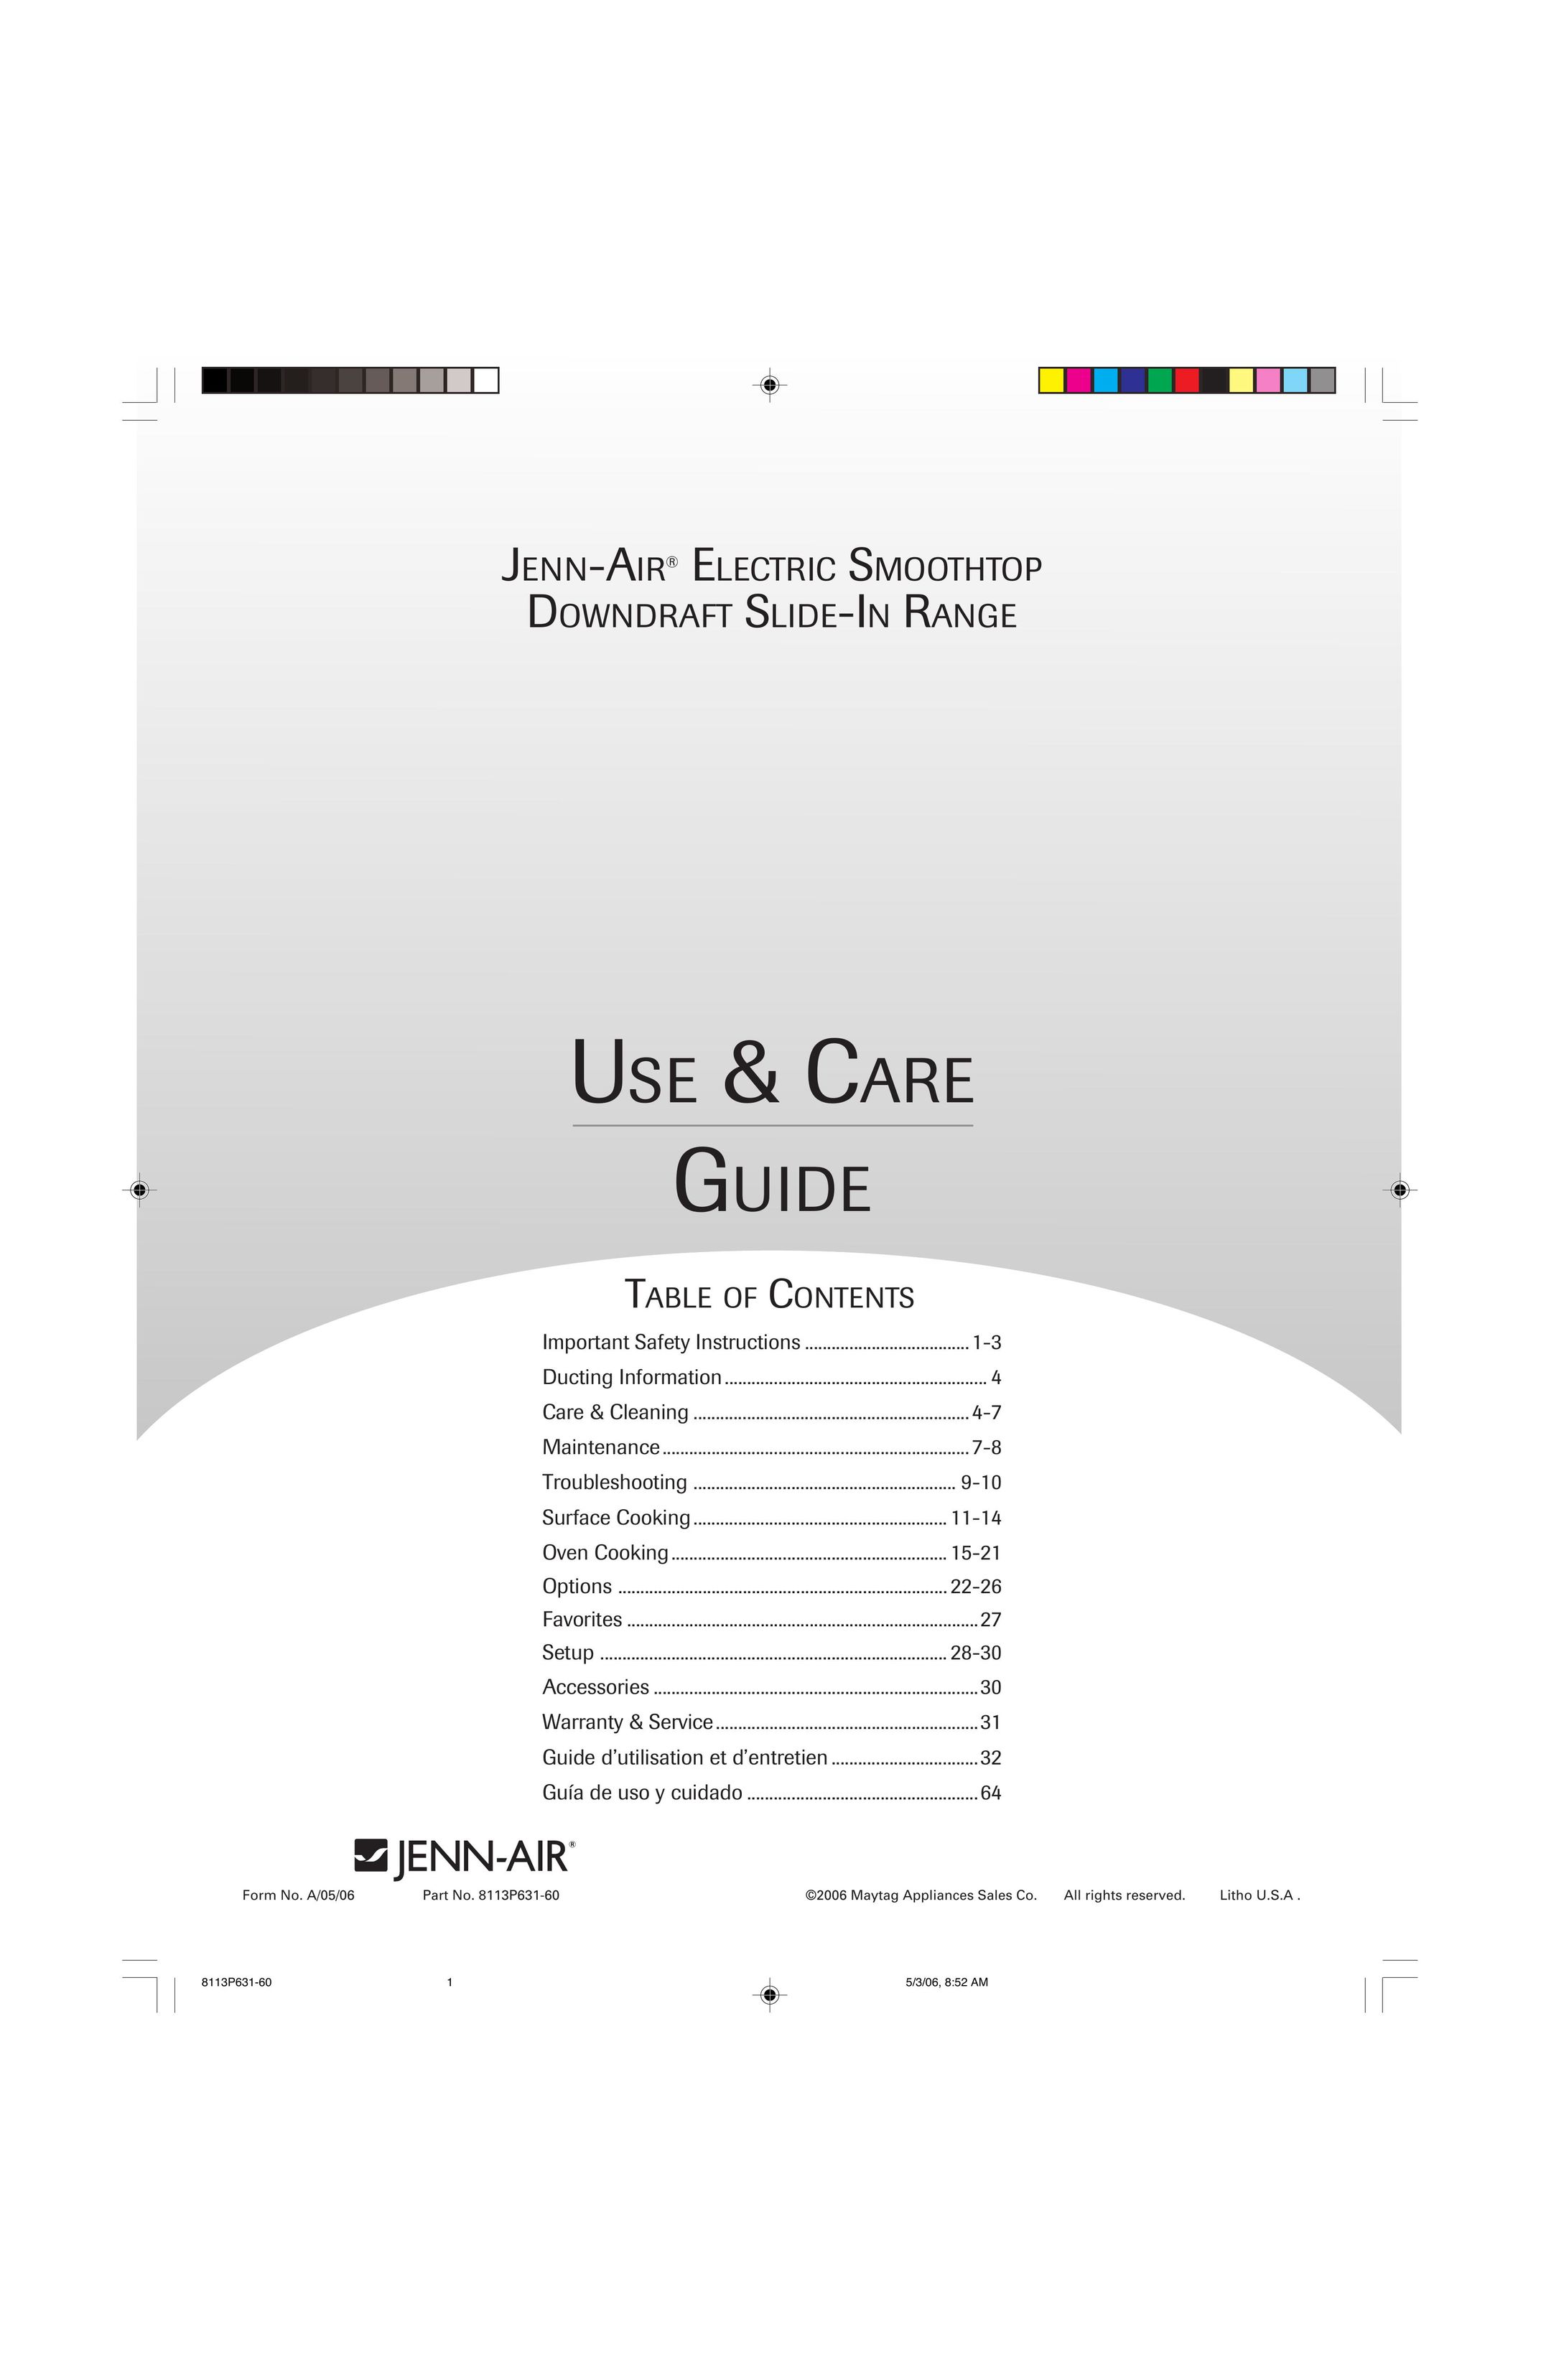 Jenn-Air ELECTRIC SMOOTHTOP DOWNDRAFT SLIDE-IN RANGE Range User Manual